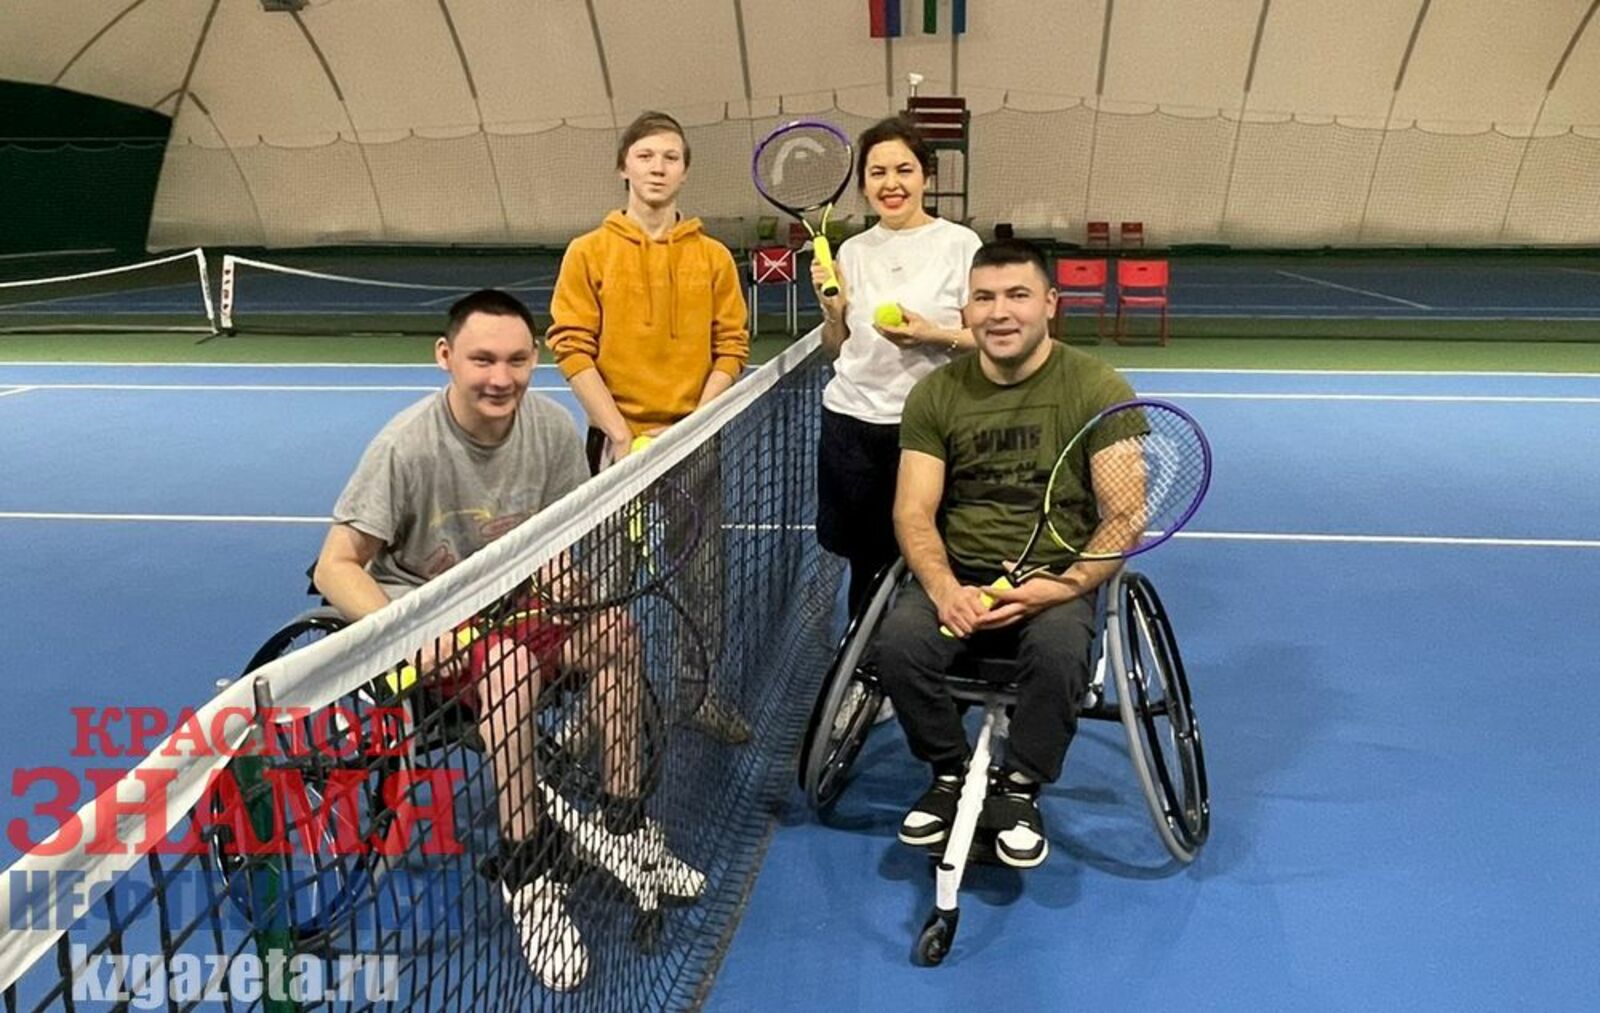 Сегодня играть в теннис могут и ребята с ограниченными возможностями здоровья. Фото: Елена Аллаярова, «КЗ».